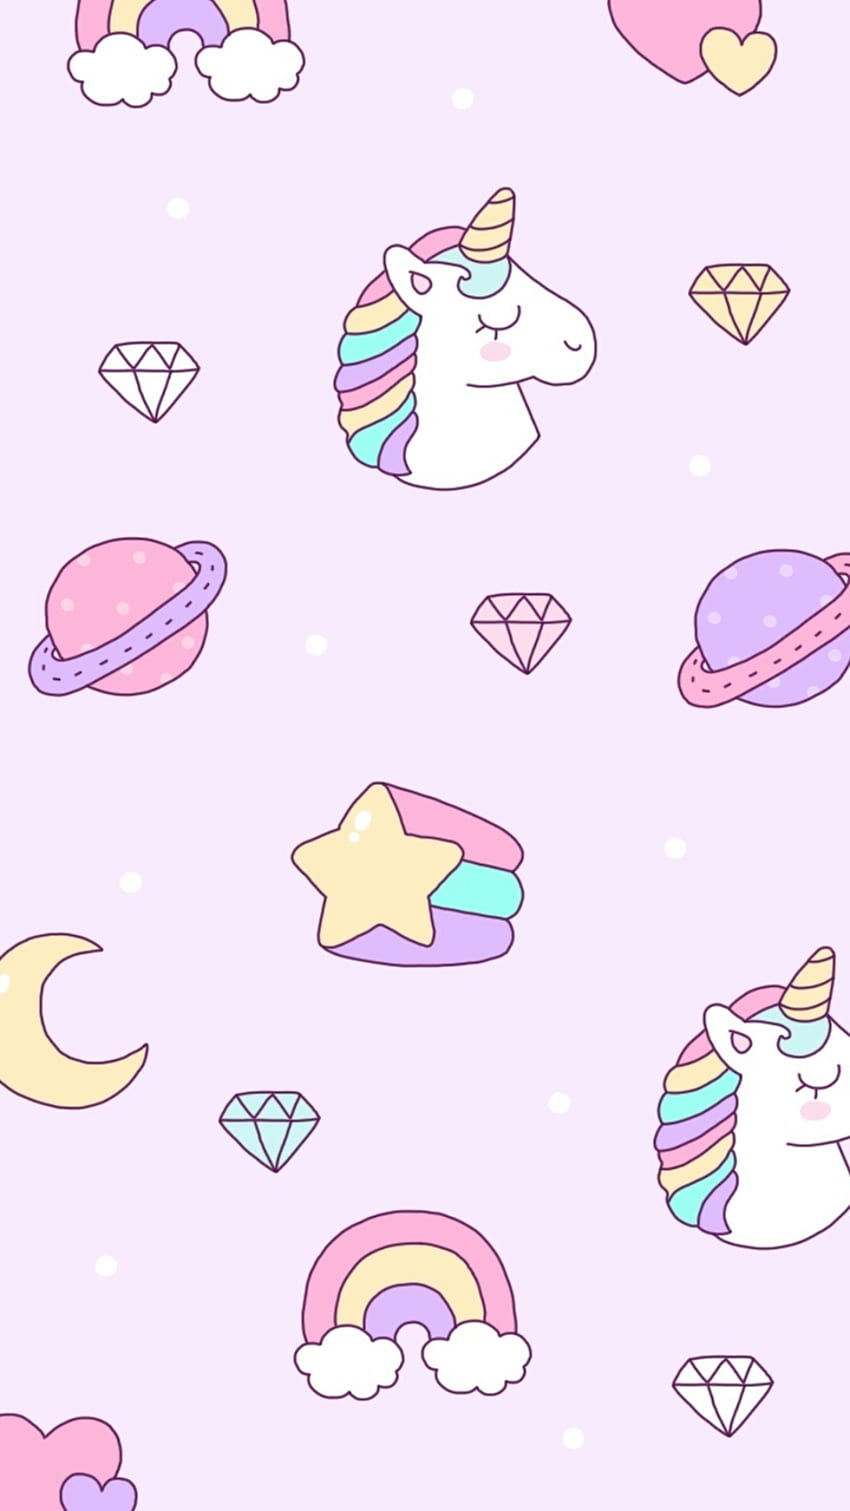 A pattern of unicorns and other cute things - Unicorn, kawaii